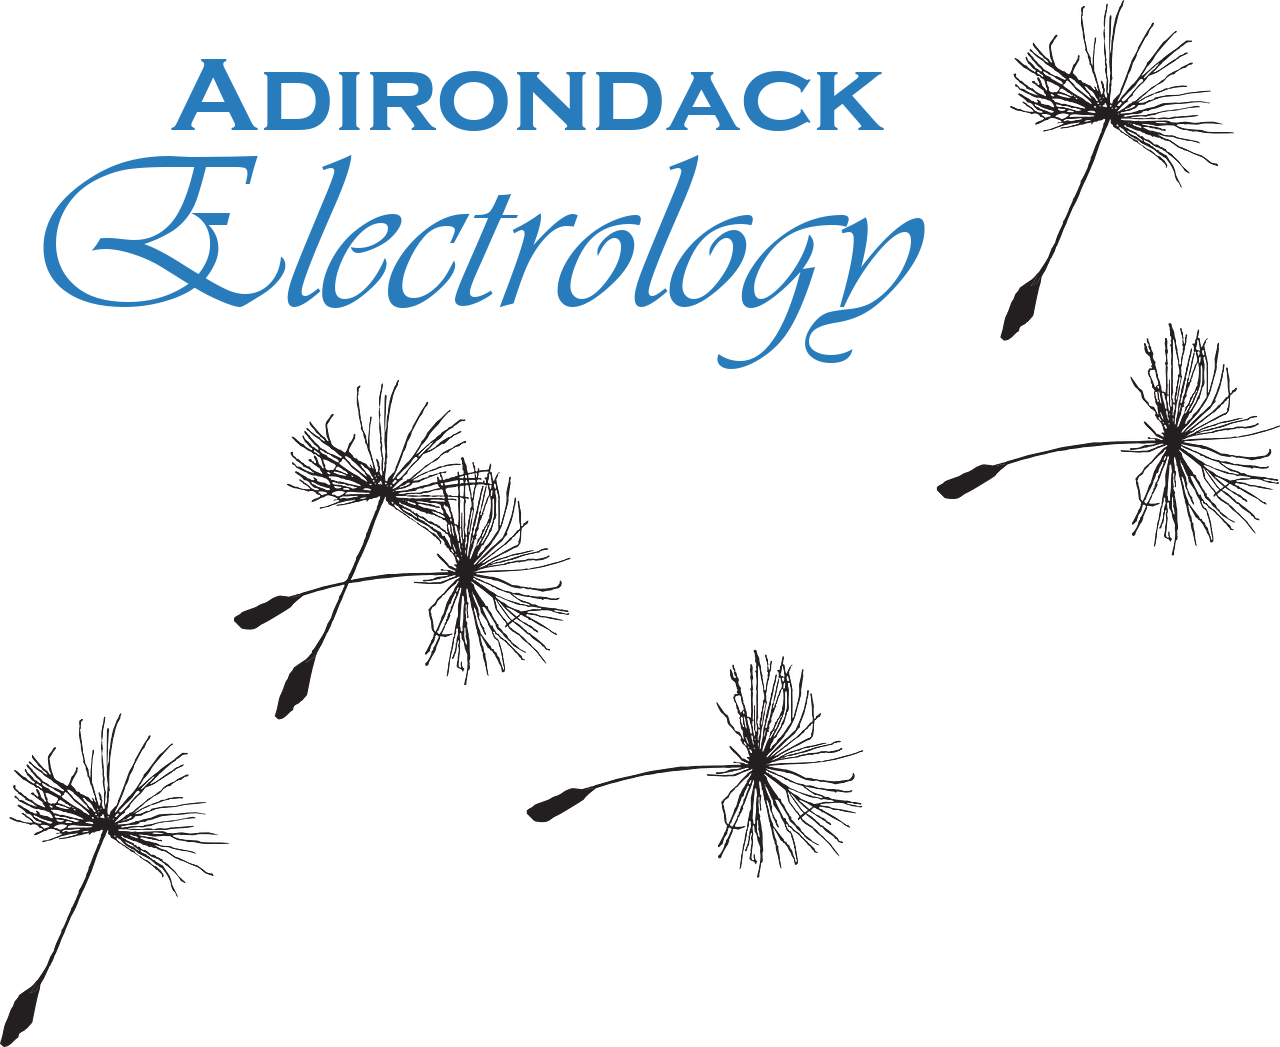 Adirondack Electrology